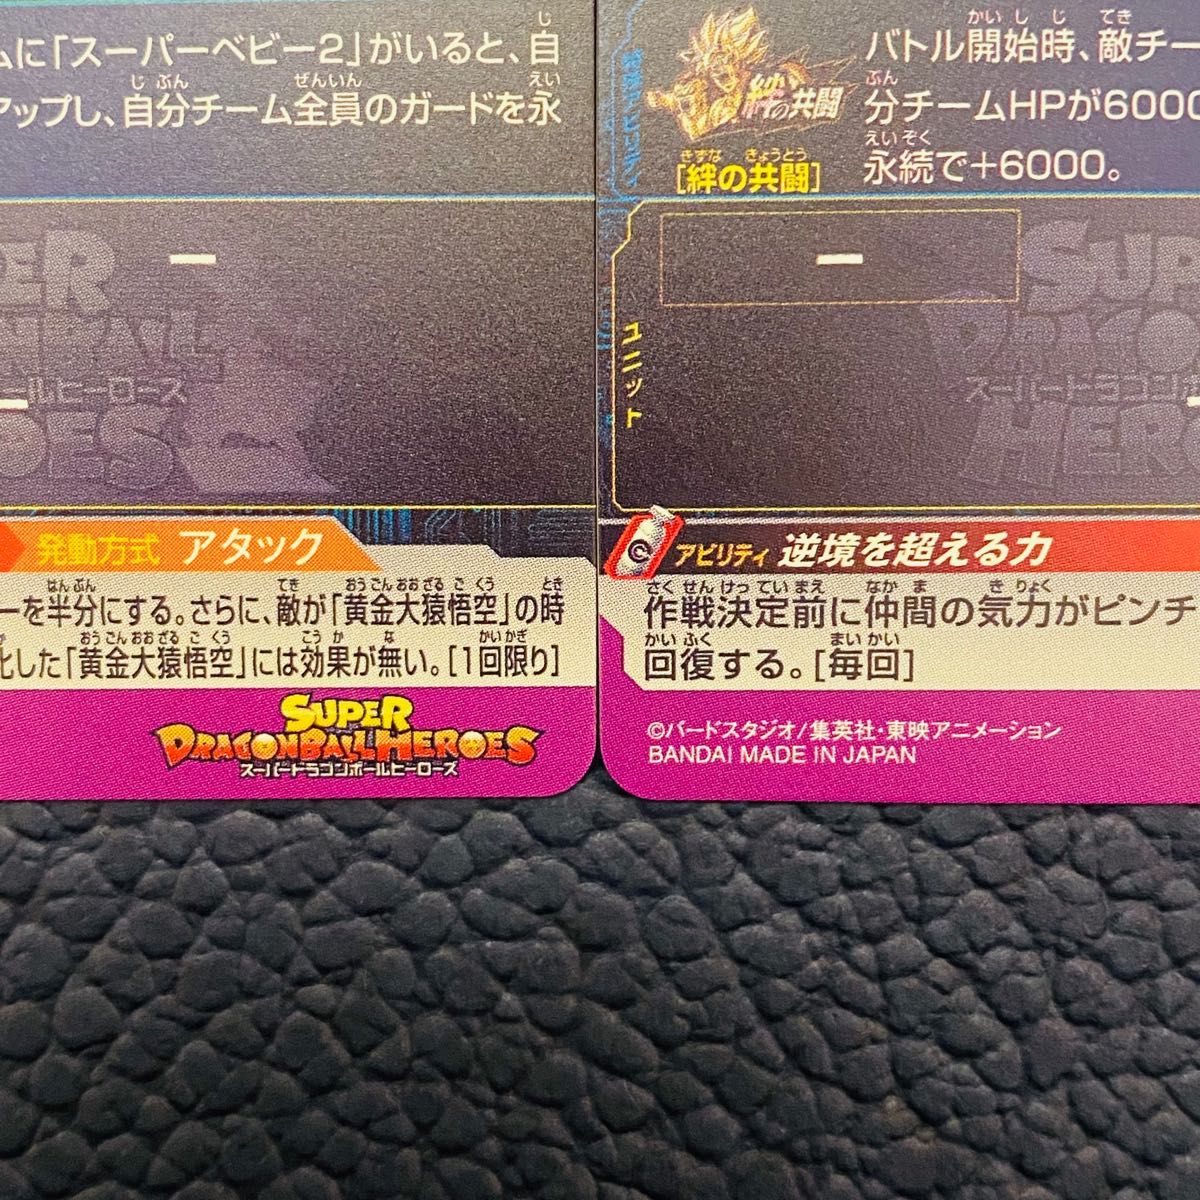 スーパードラゴンボールヒーローズ UGM5-KCP7 孫悟空 UGM5-KCP8 パン